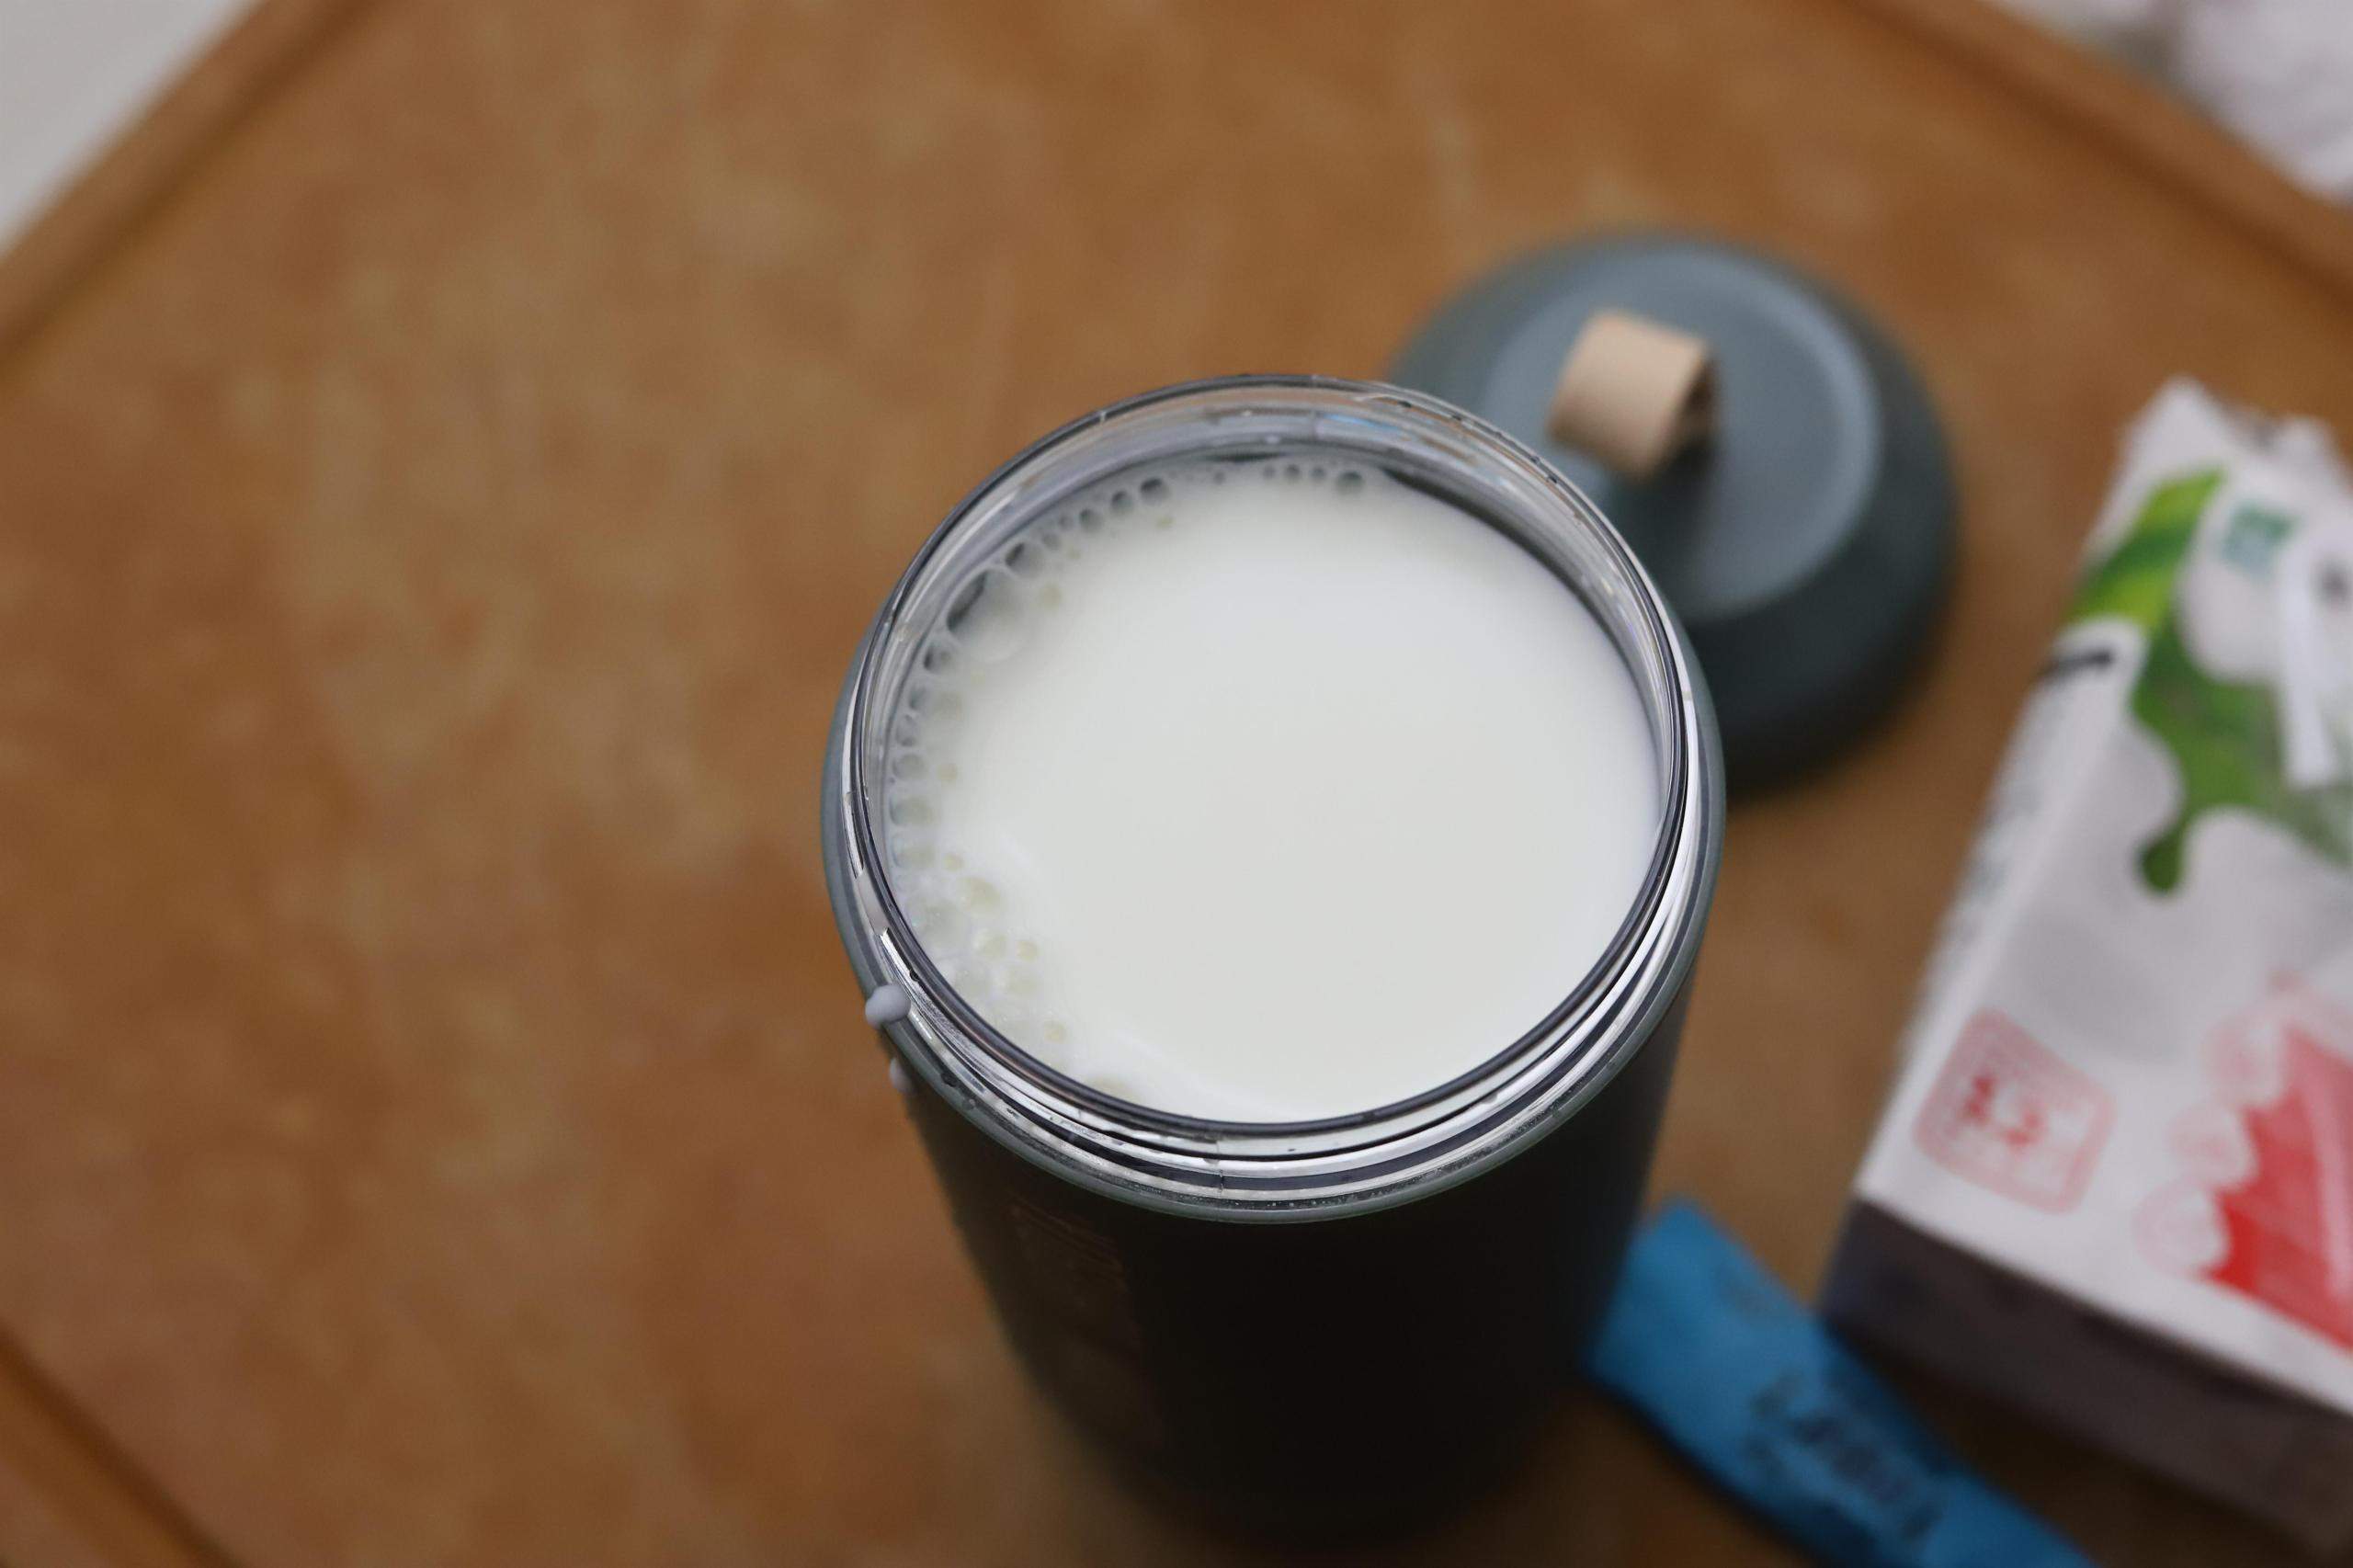 自制酸奶怎么做？简单三步搞定自制酸奶，凝固顺滑没颗粒 - 奇点